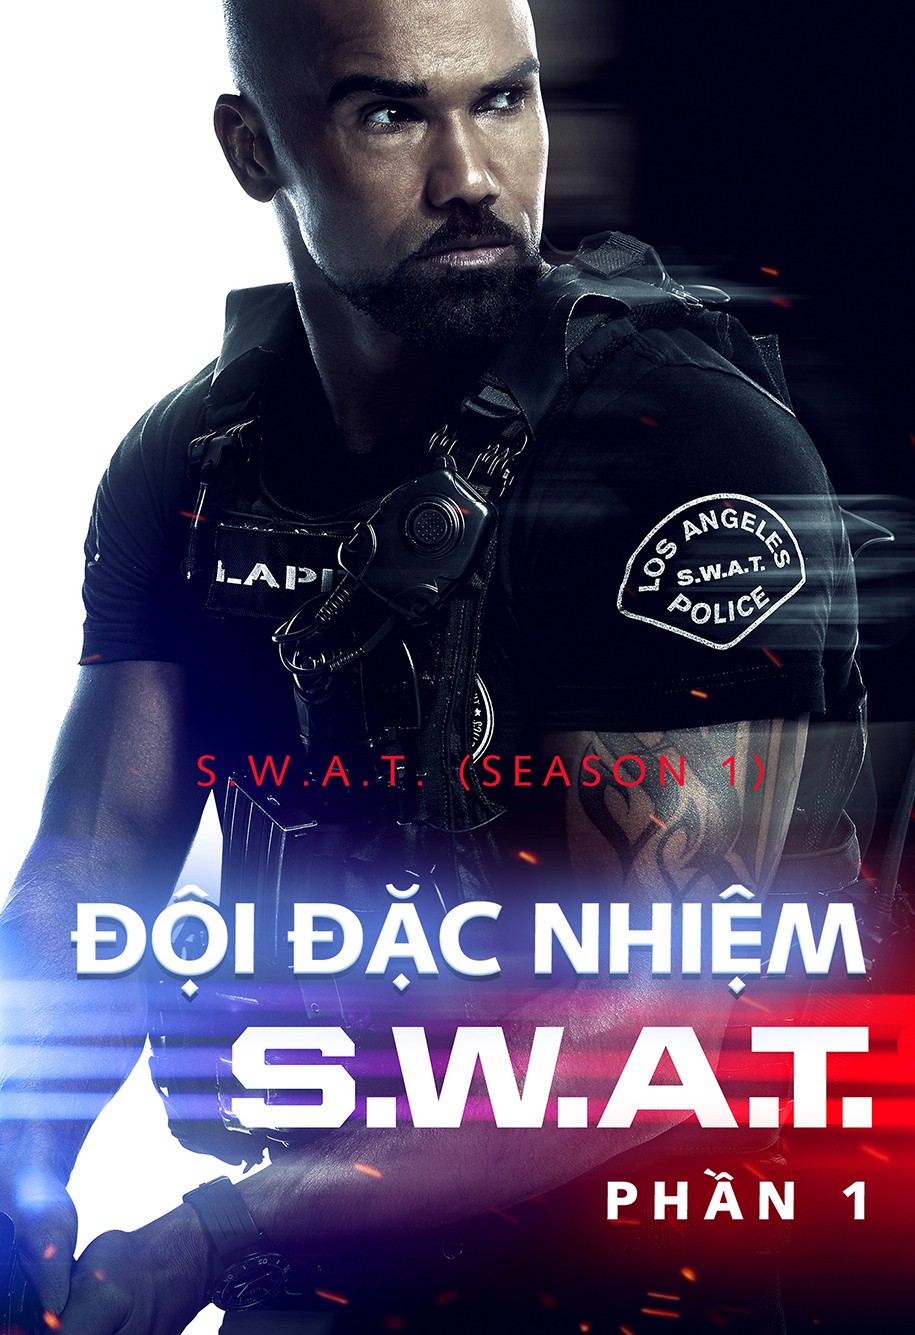 Đội Đặc Nhiệm SWAT (Phần 1) 2017